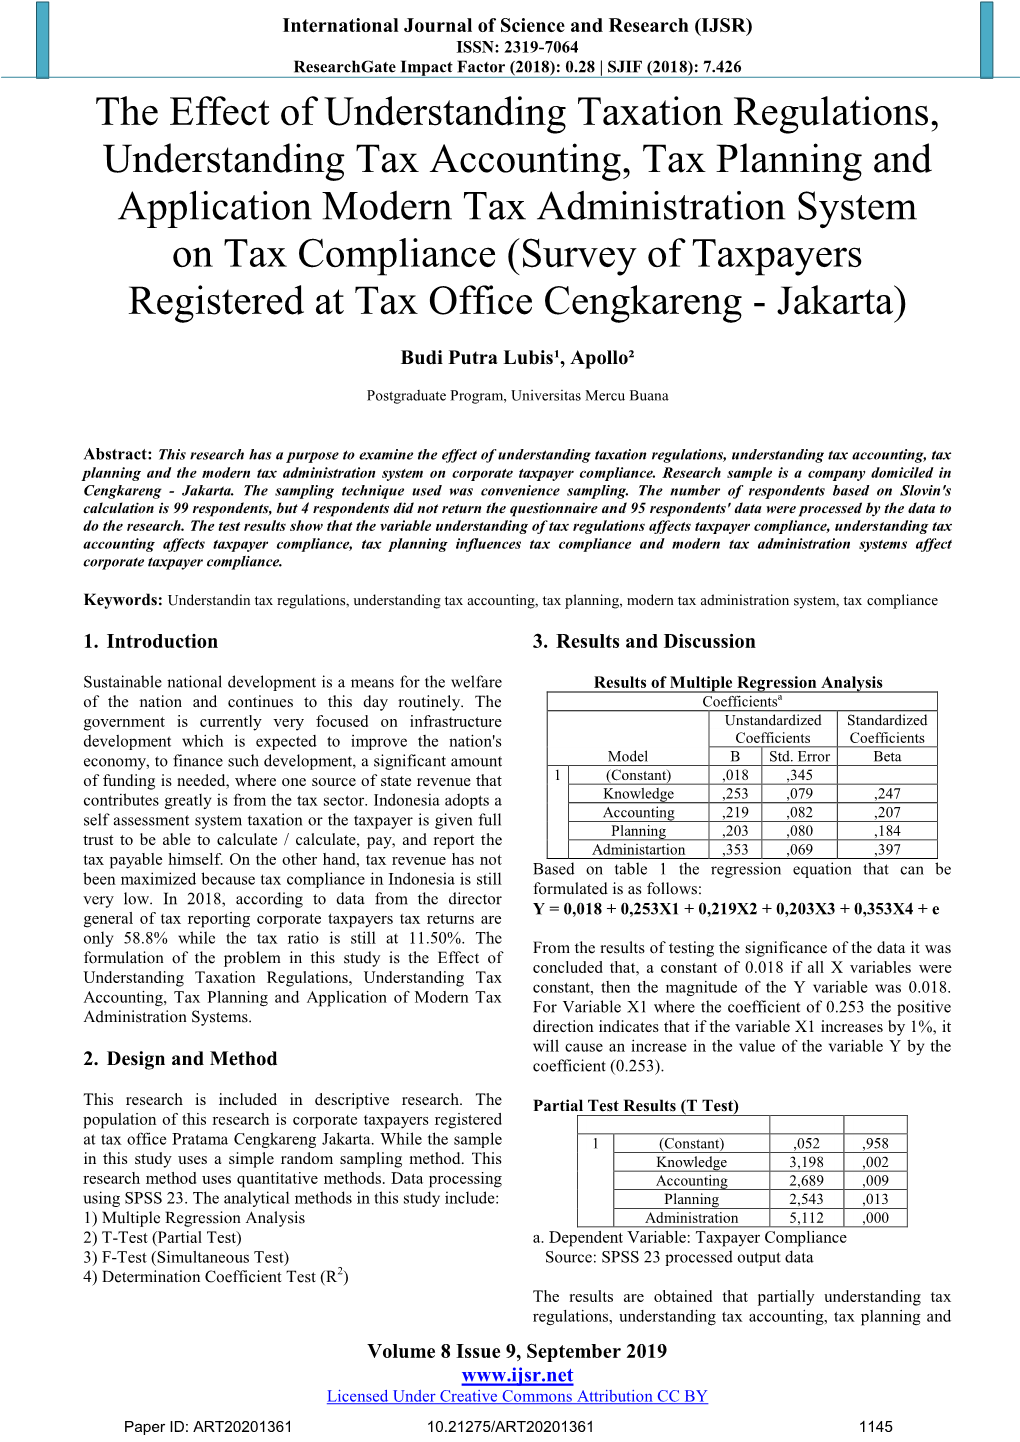 The Effect of Understanding Taxation Regulations, Understanding Tax